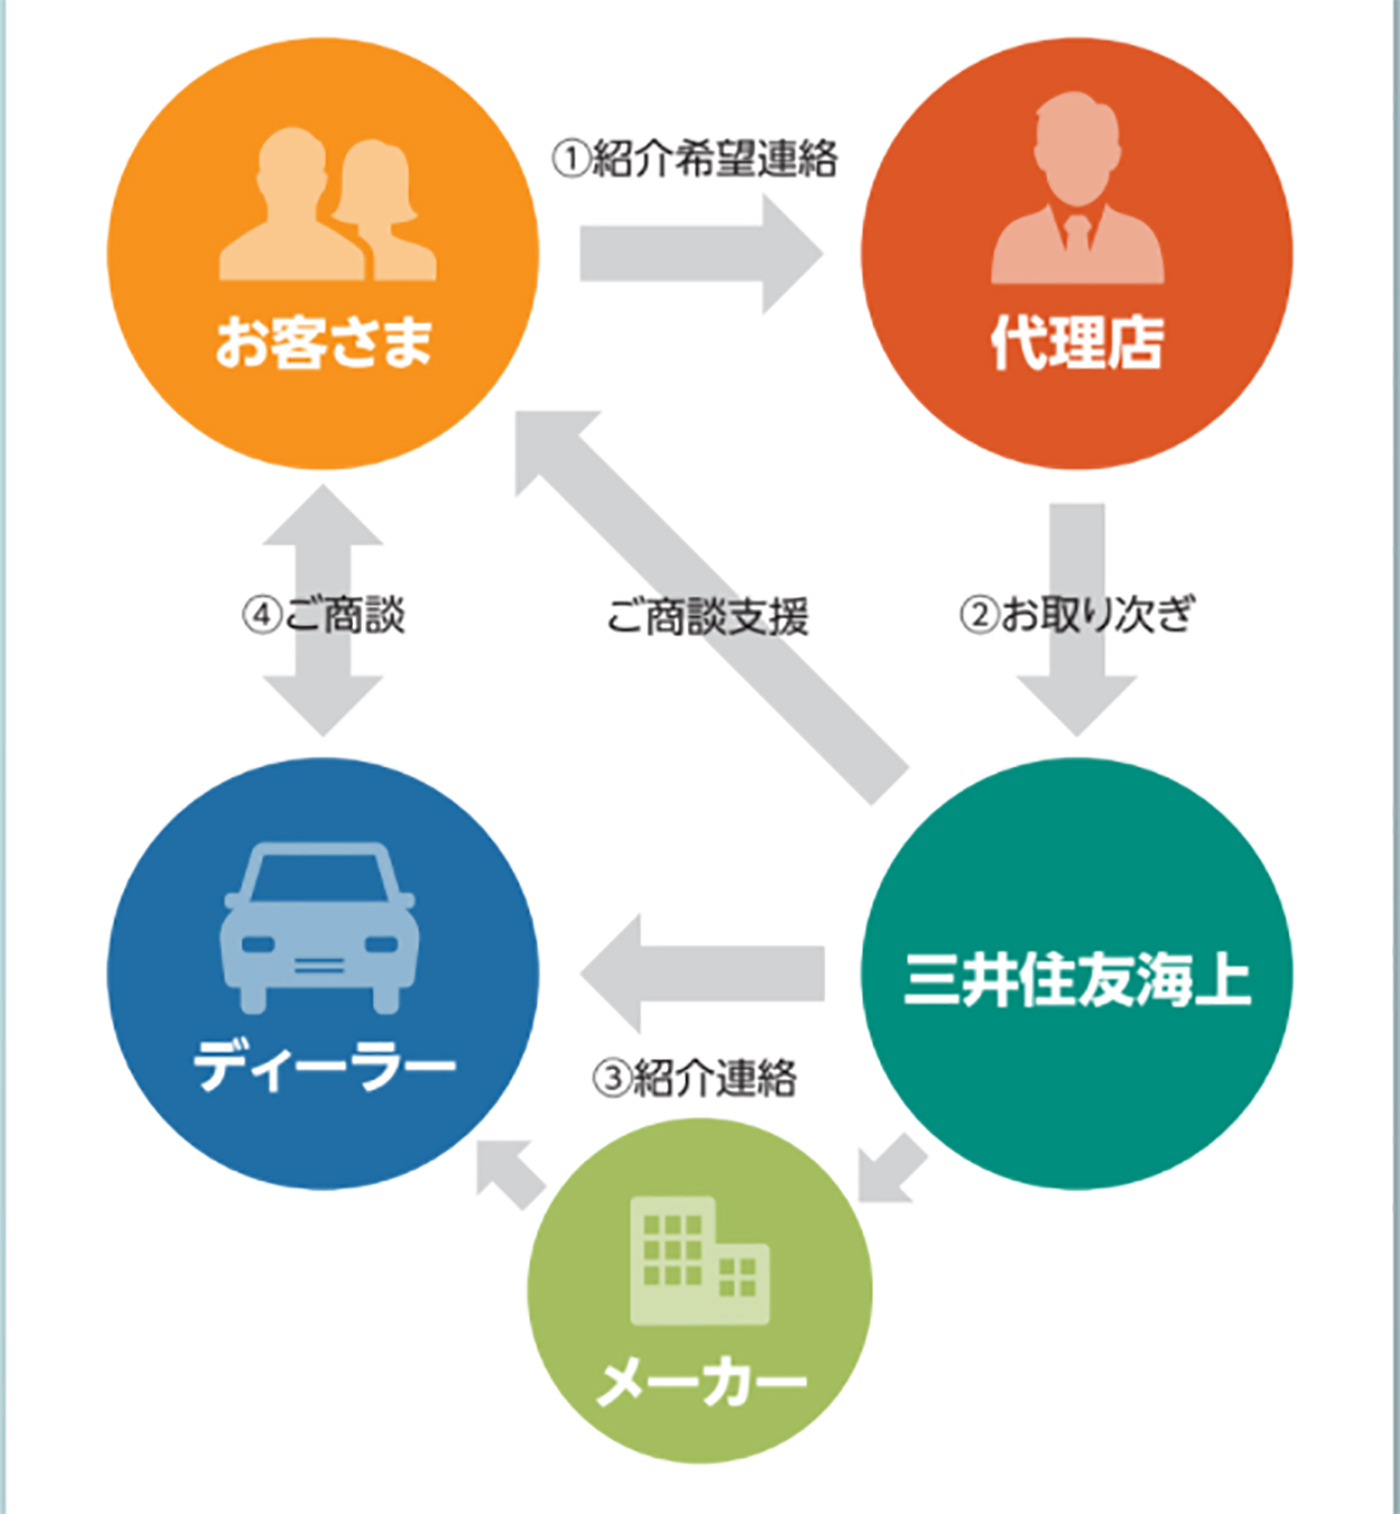 車を買うときの流れ、泉佐野市自動車保険は、㈱モスト保険企画